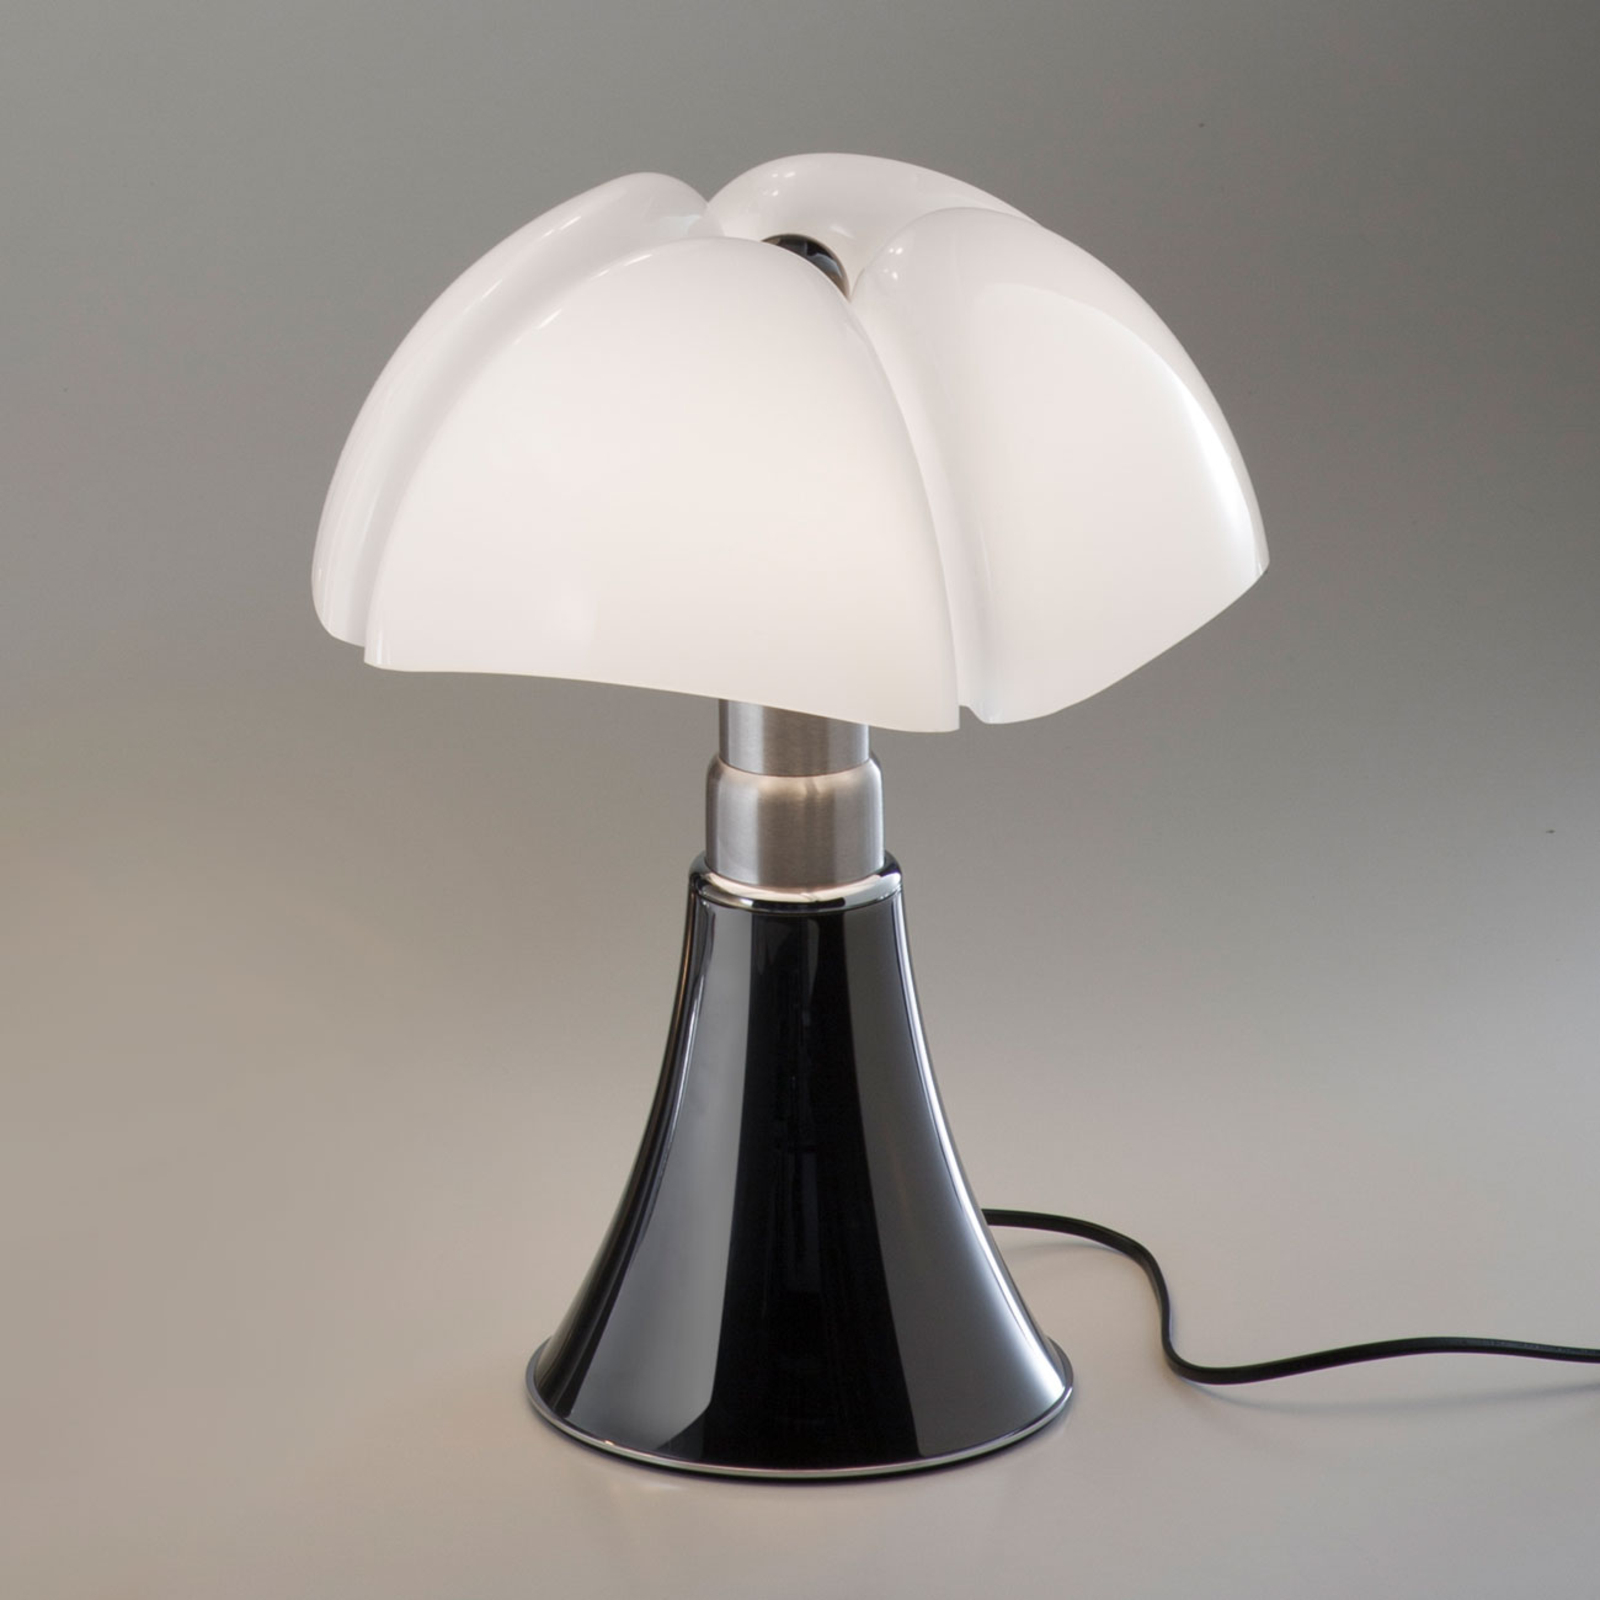 Martinelli Luce Minipistrello stolová lampa titánová